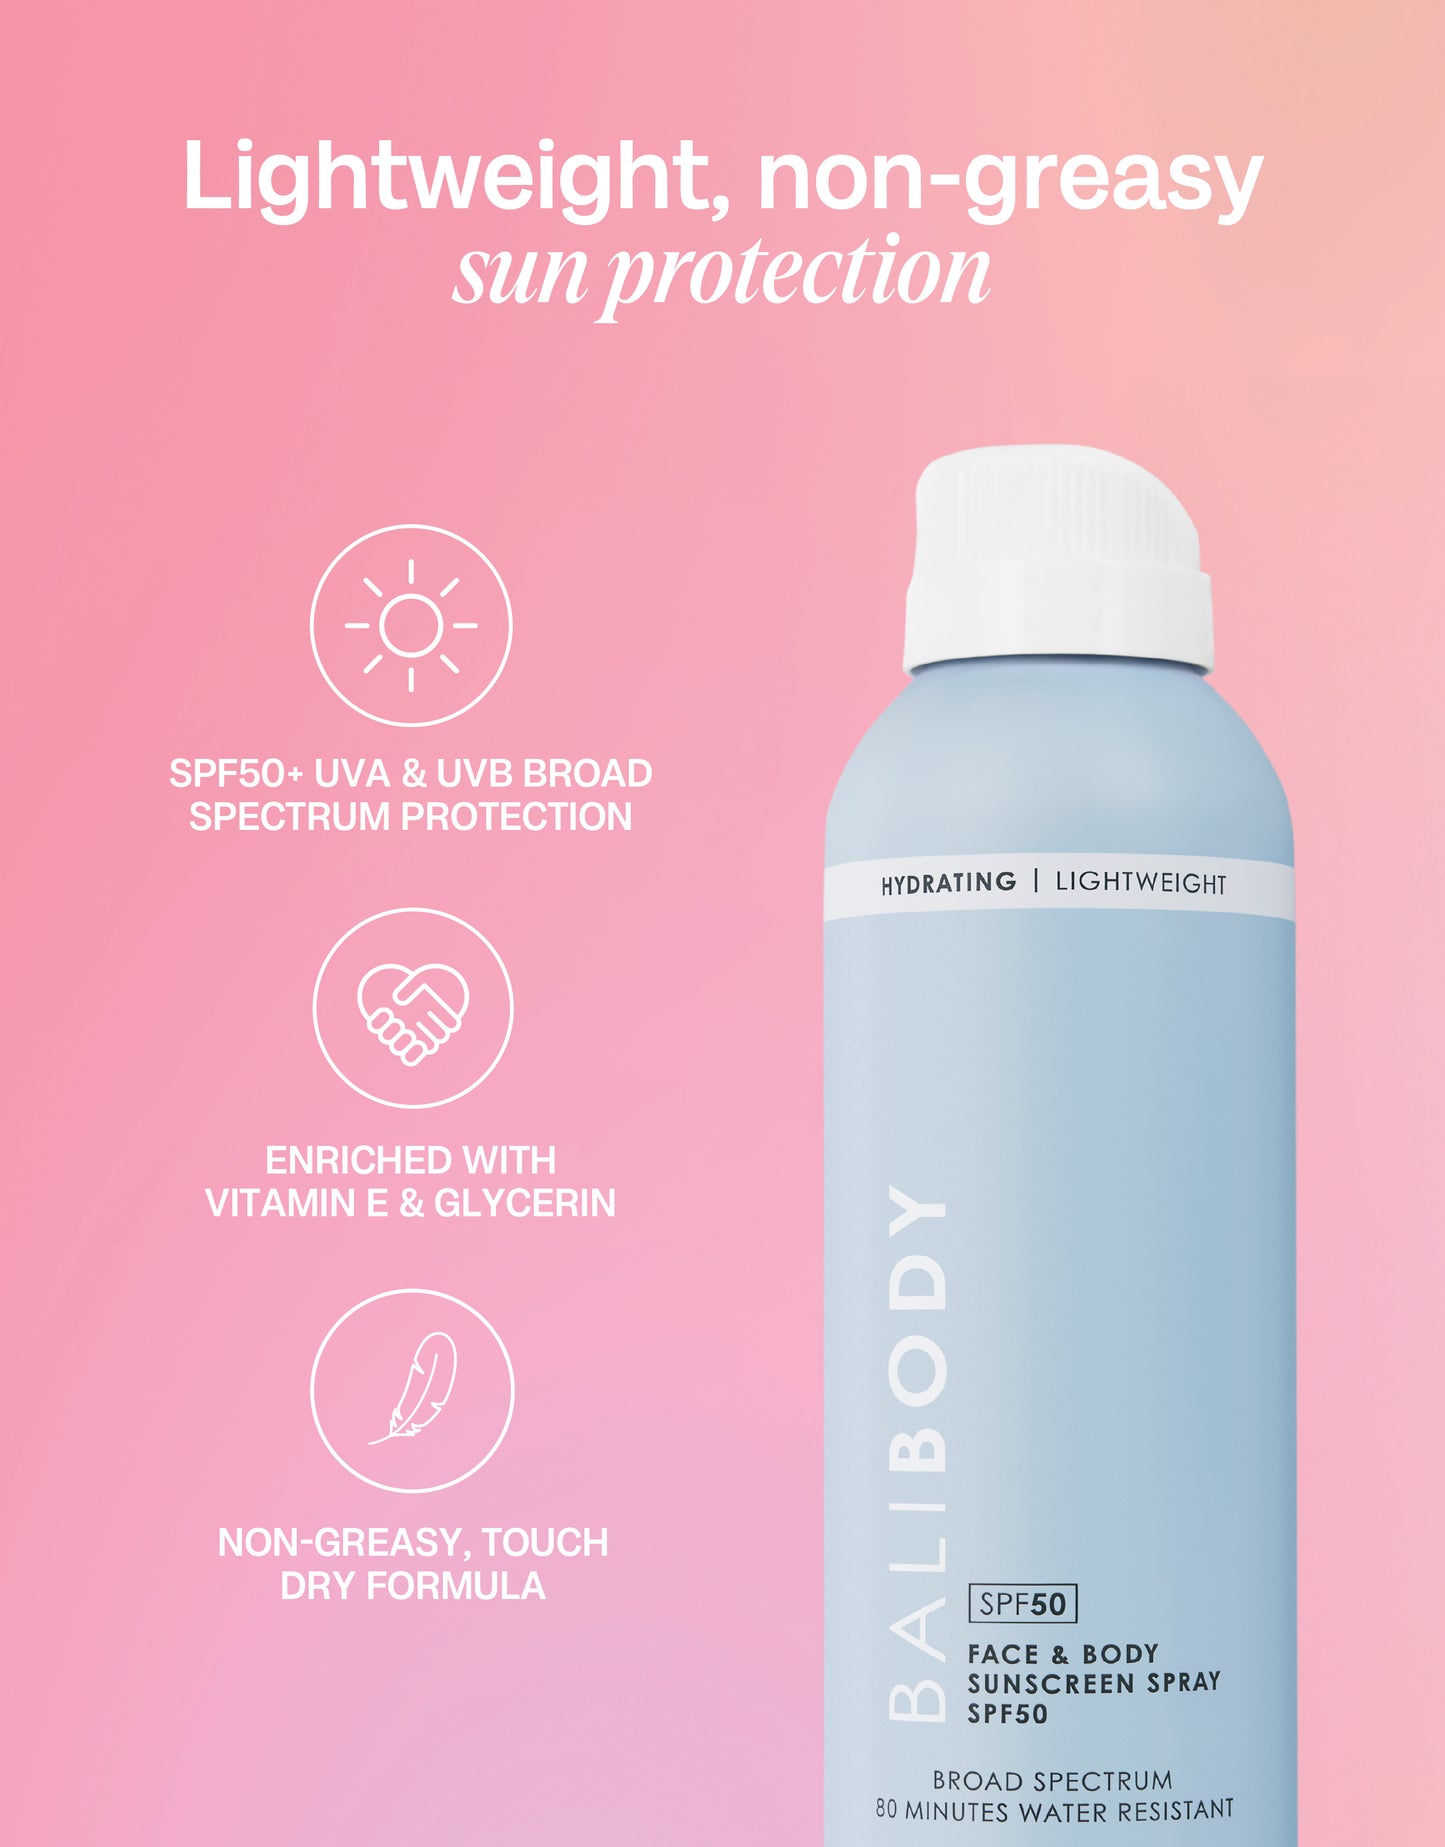 Face & Body Sunscreen Spray SPF50